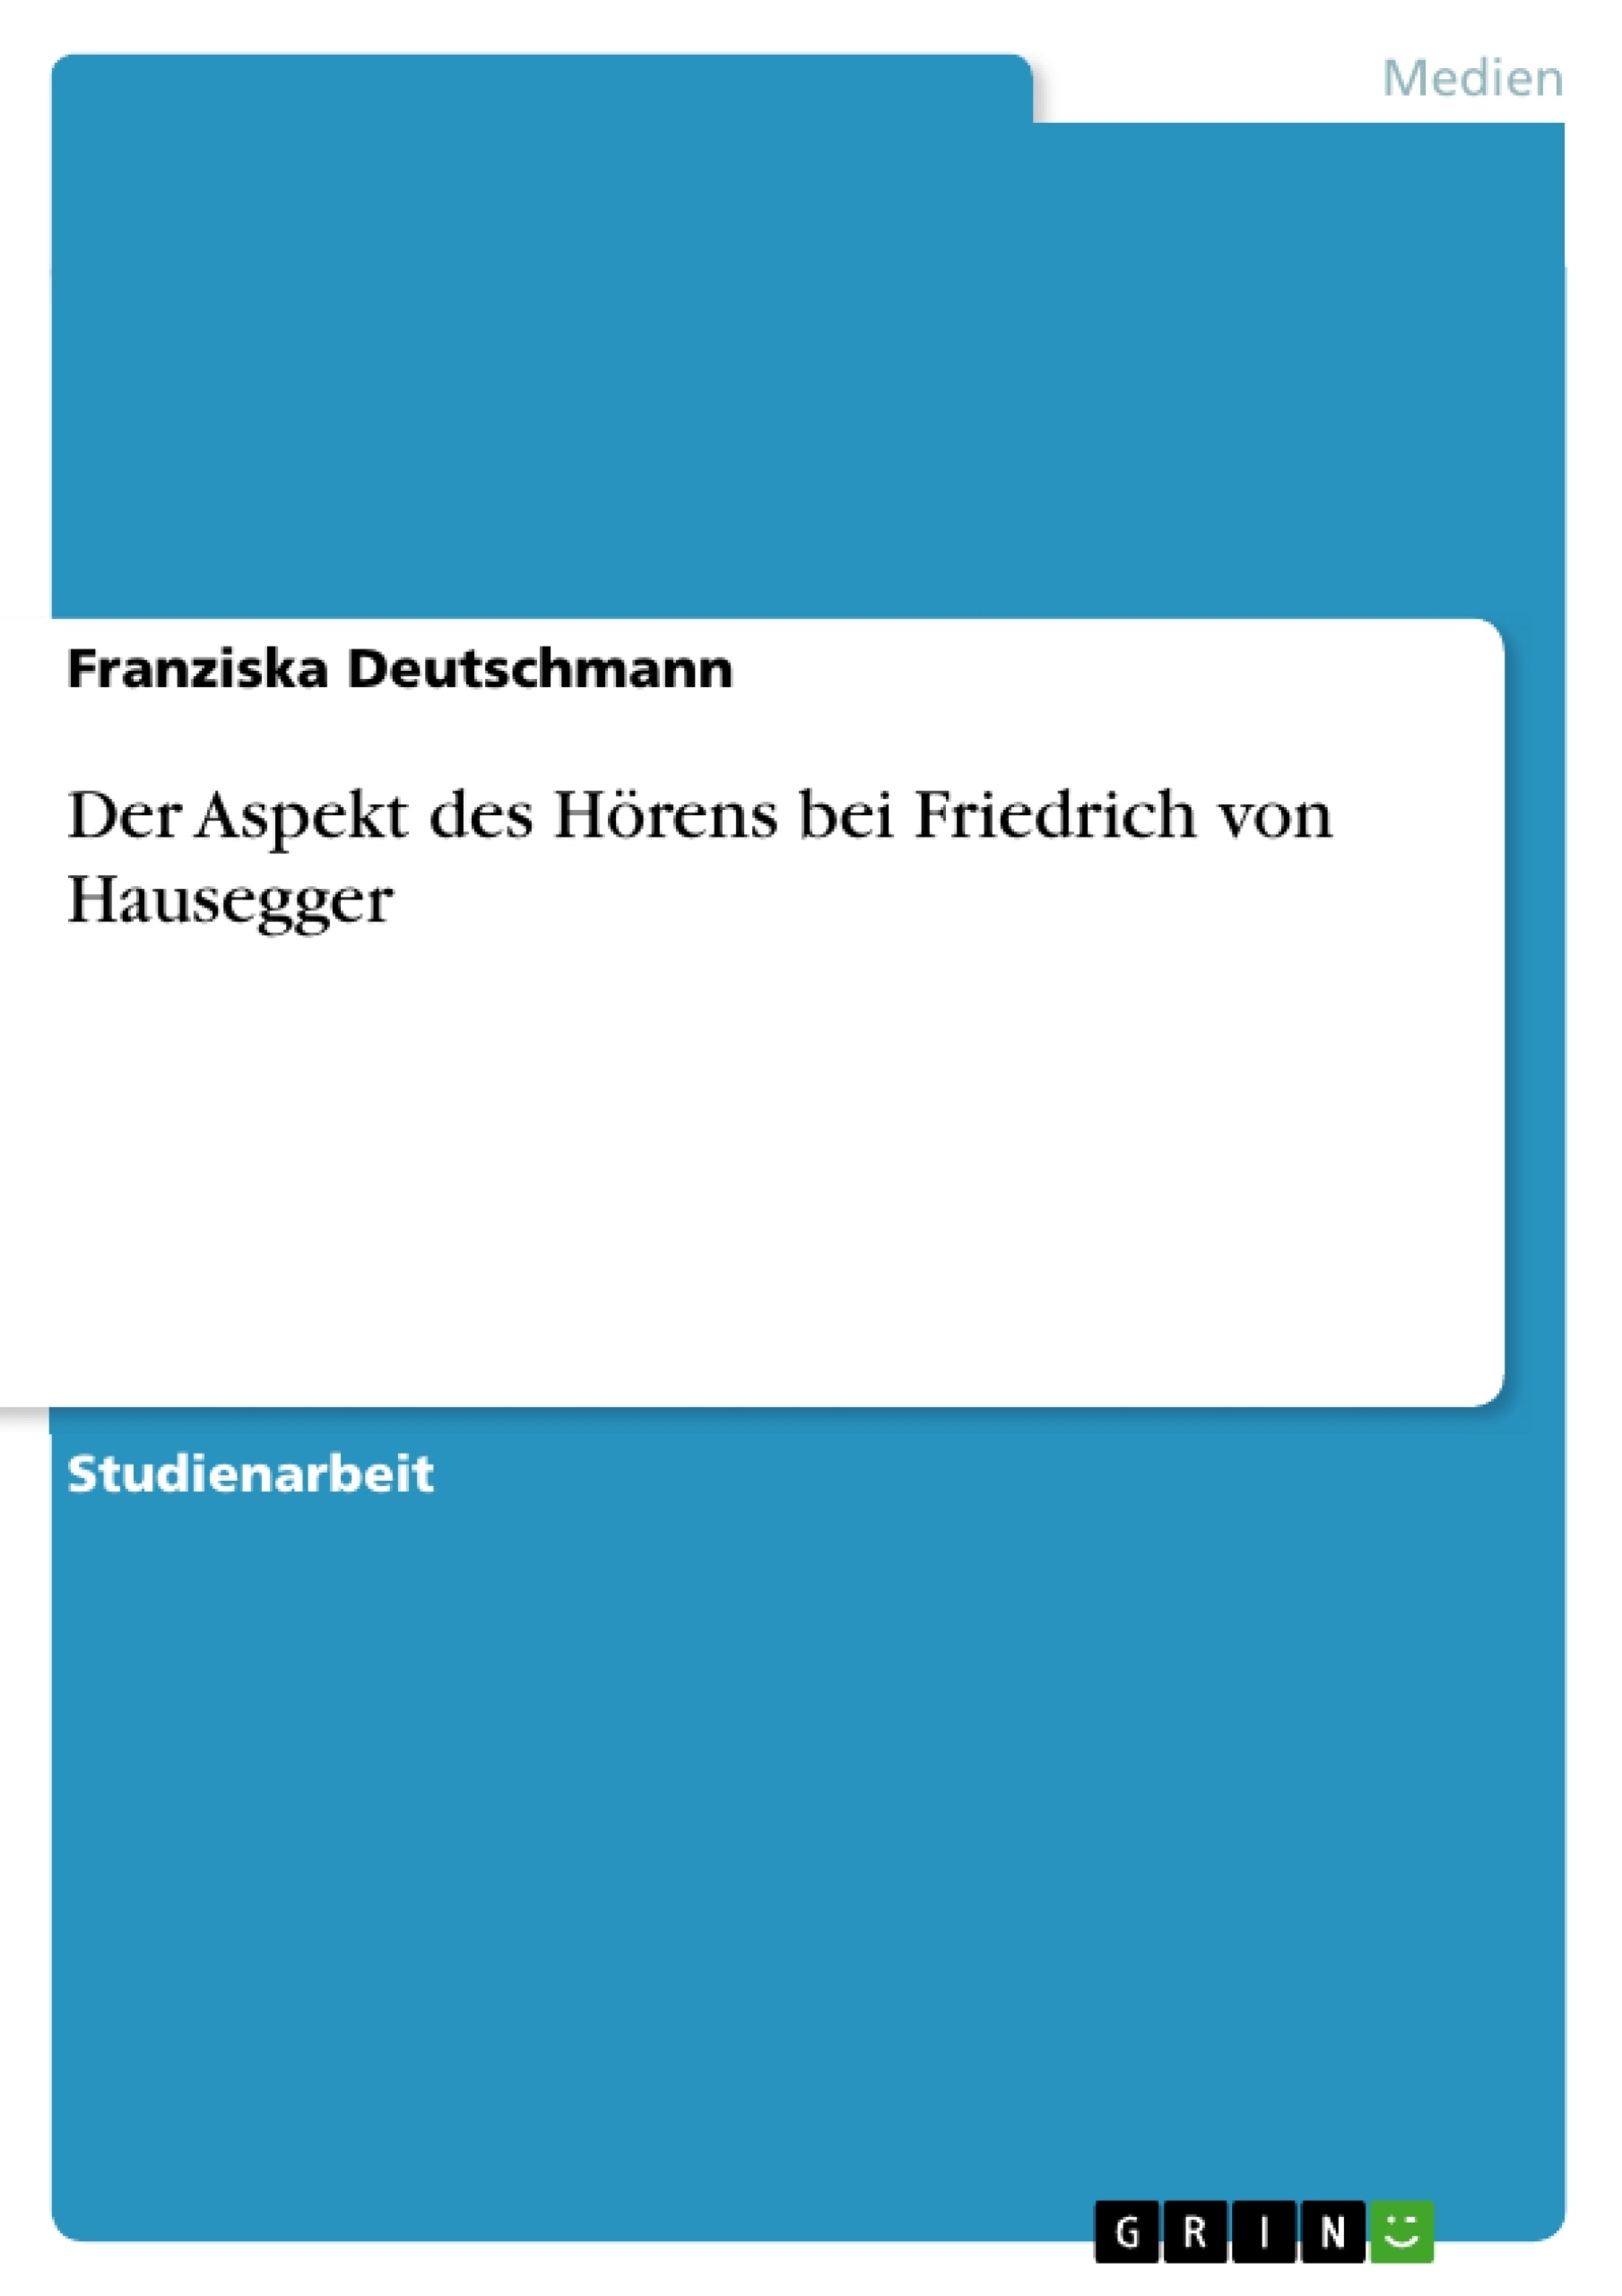 Titre: Der Aspekt des Hörens bei Friedrich von Hausegger